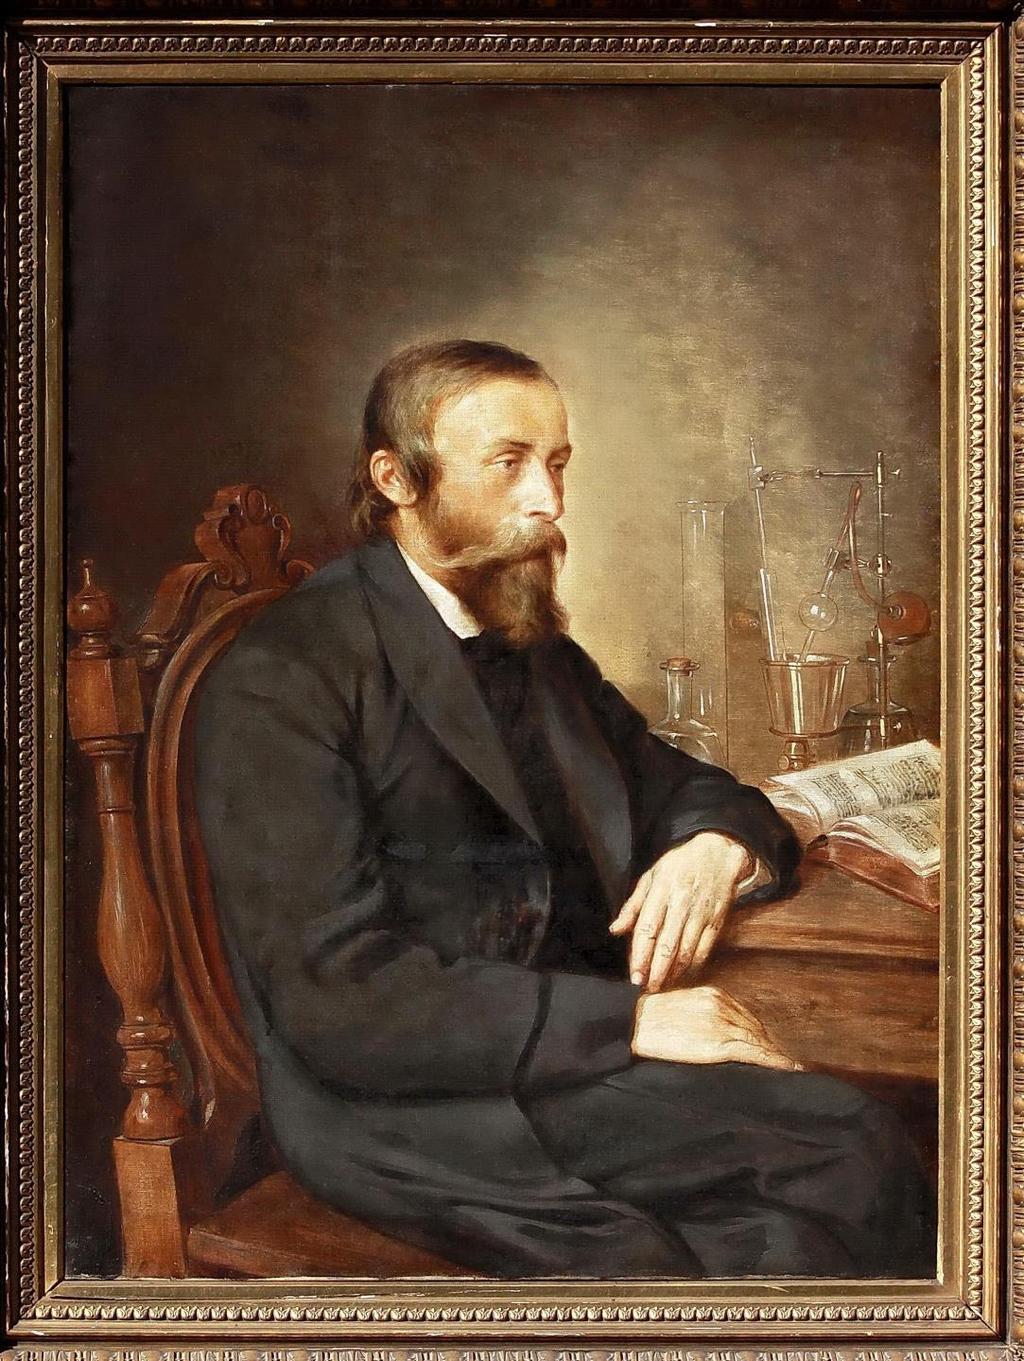 Najbardziej znany obraz Ignacego Łukasiewicza pochodzi ze zbiorów Muzeum Przemysłu